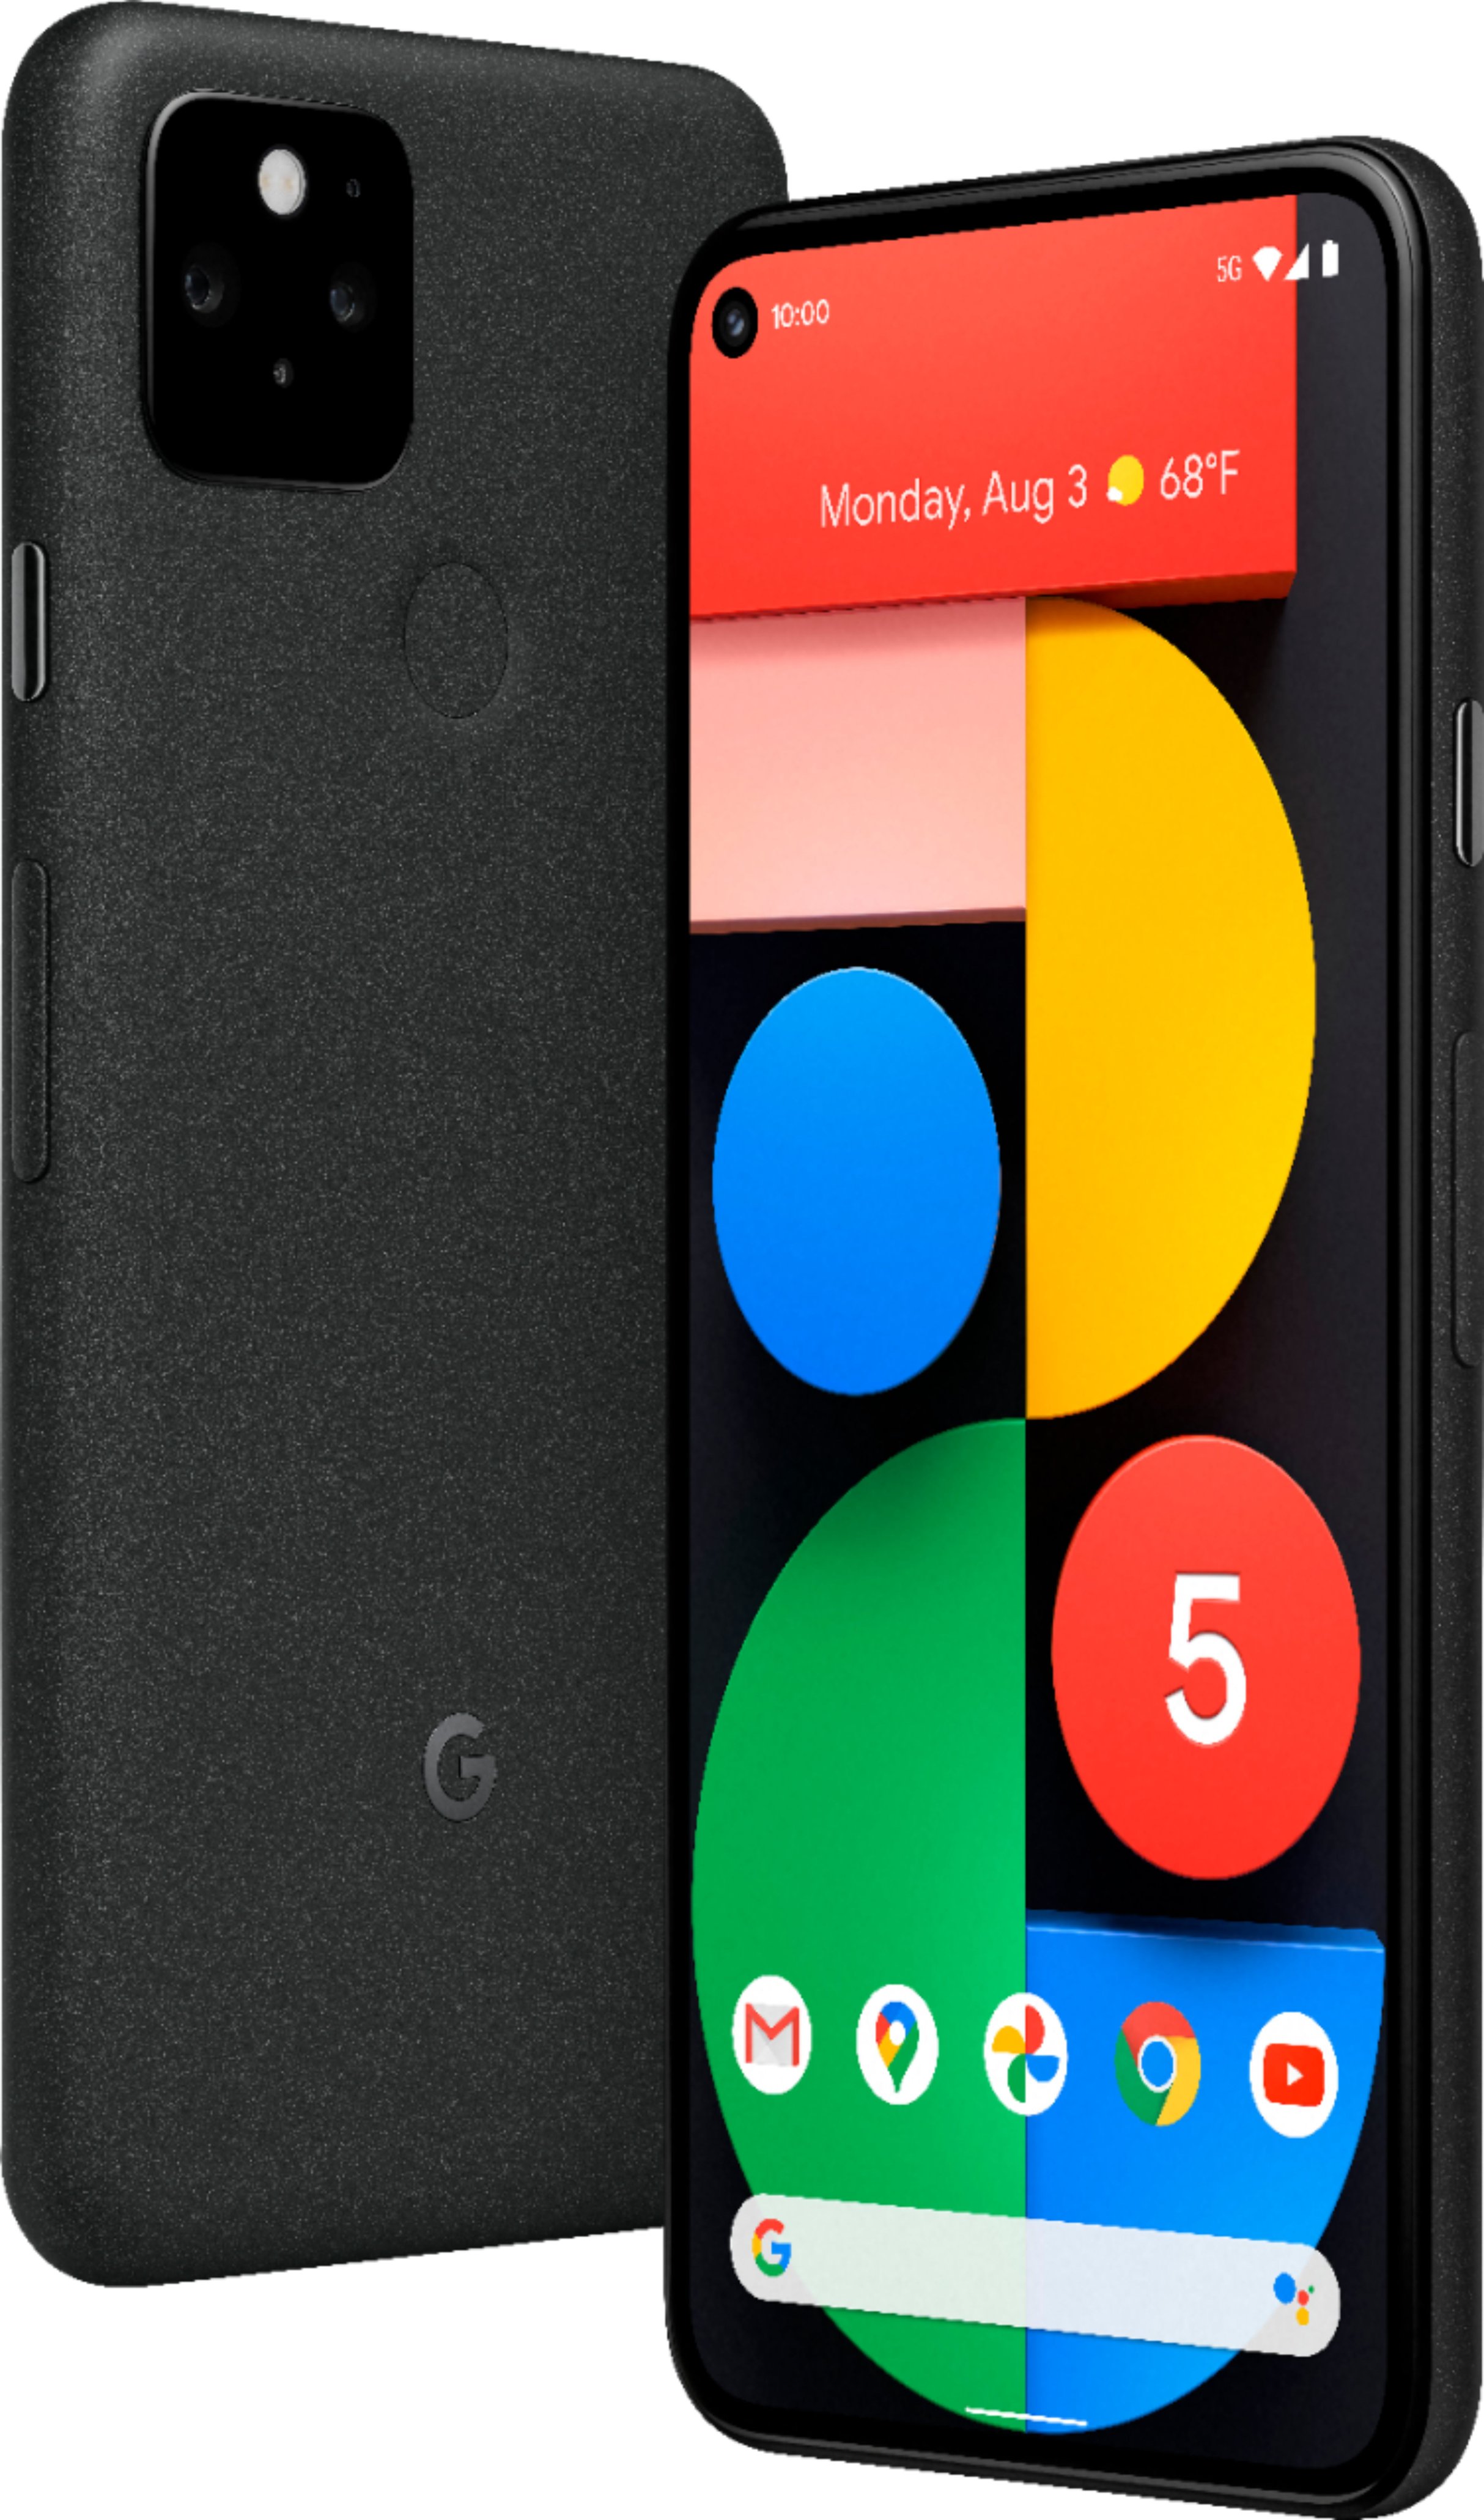 スマートフォン/携帯電話 スマートフォン本体 Google Pixel 5 5G 128GB (Unlocked) Just Black GA01316 .. - Best Buy